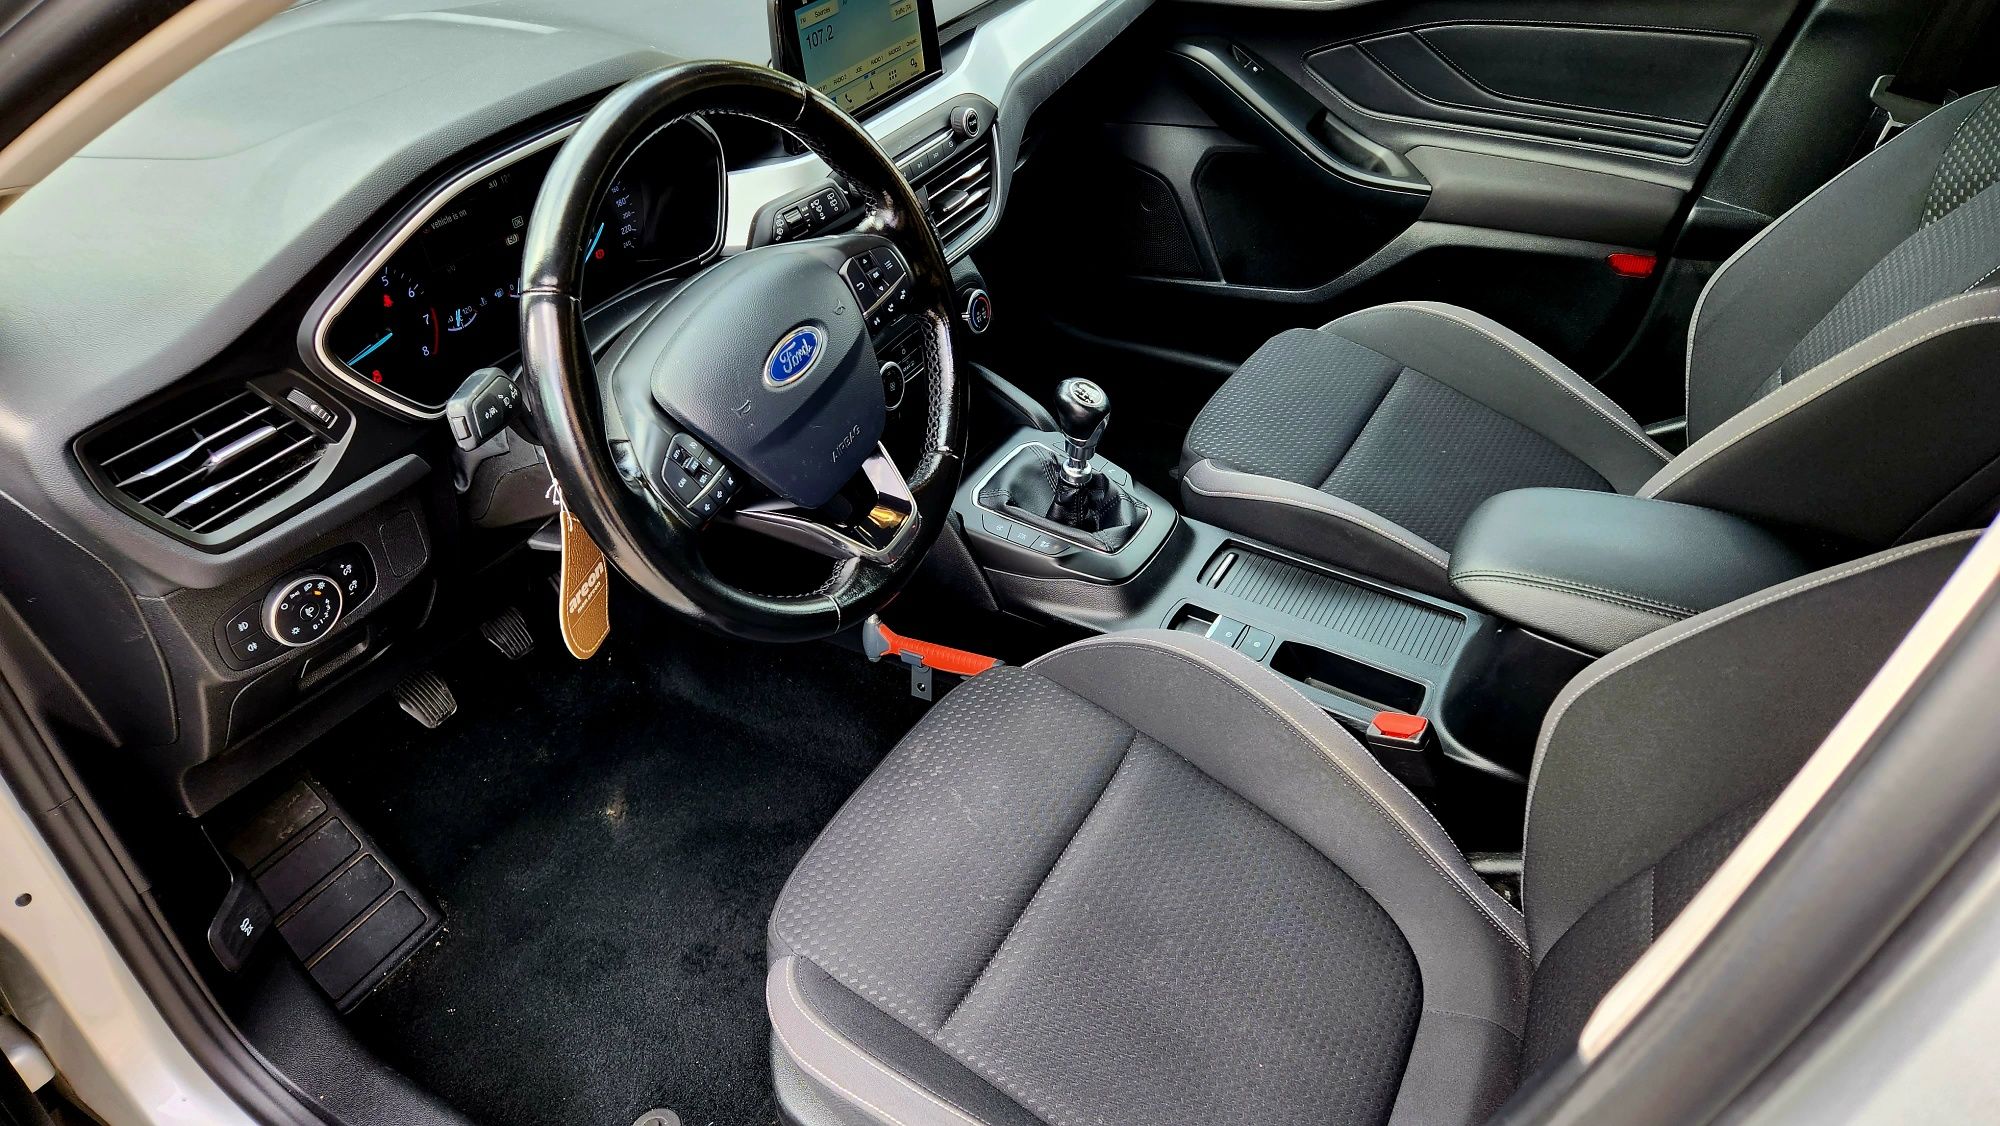 Ford Focus 2019 125 cp